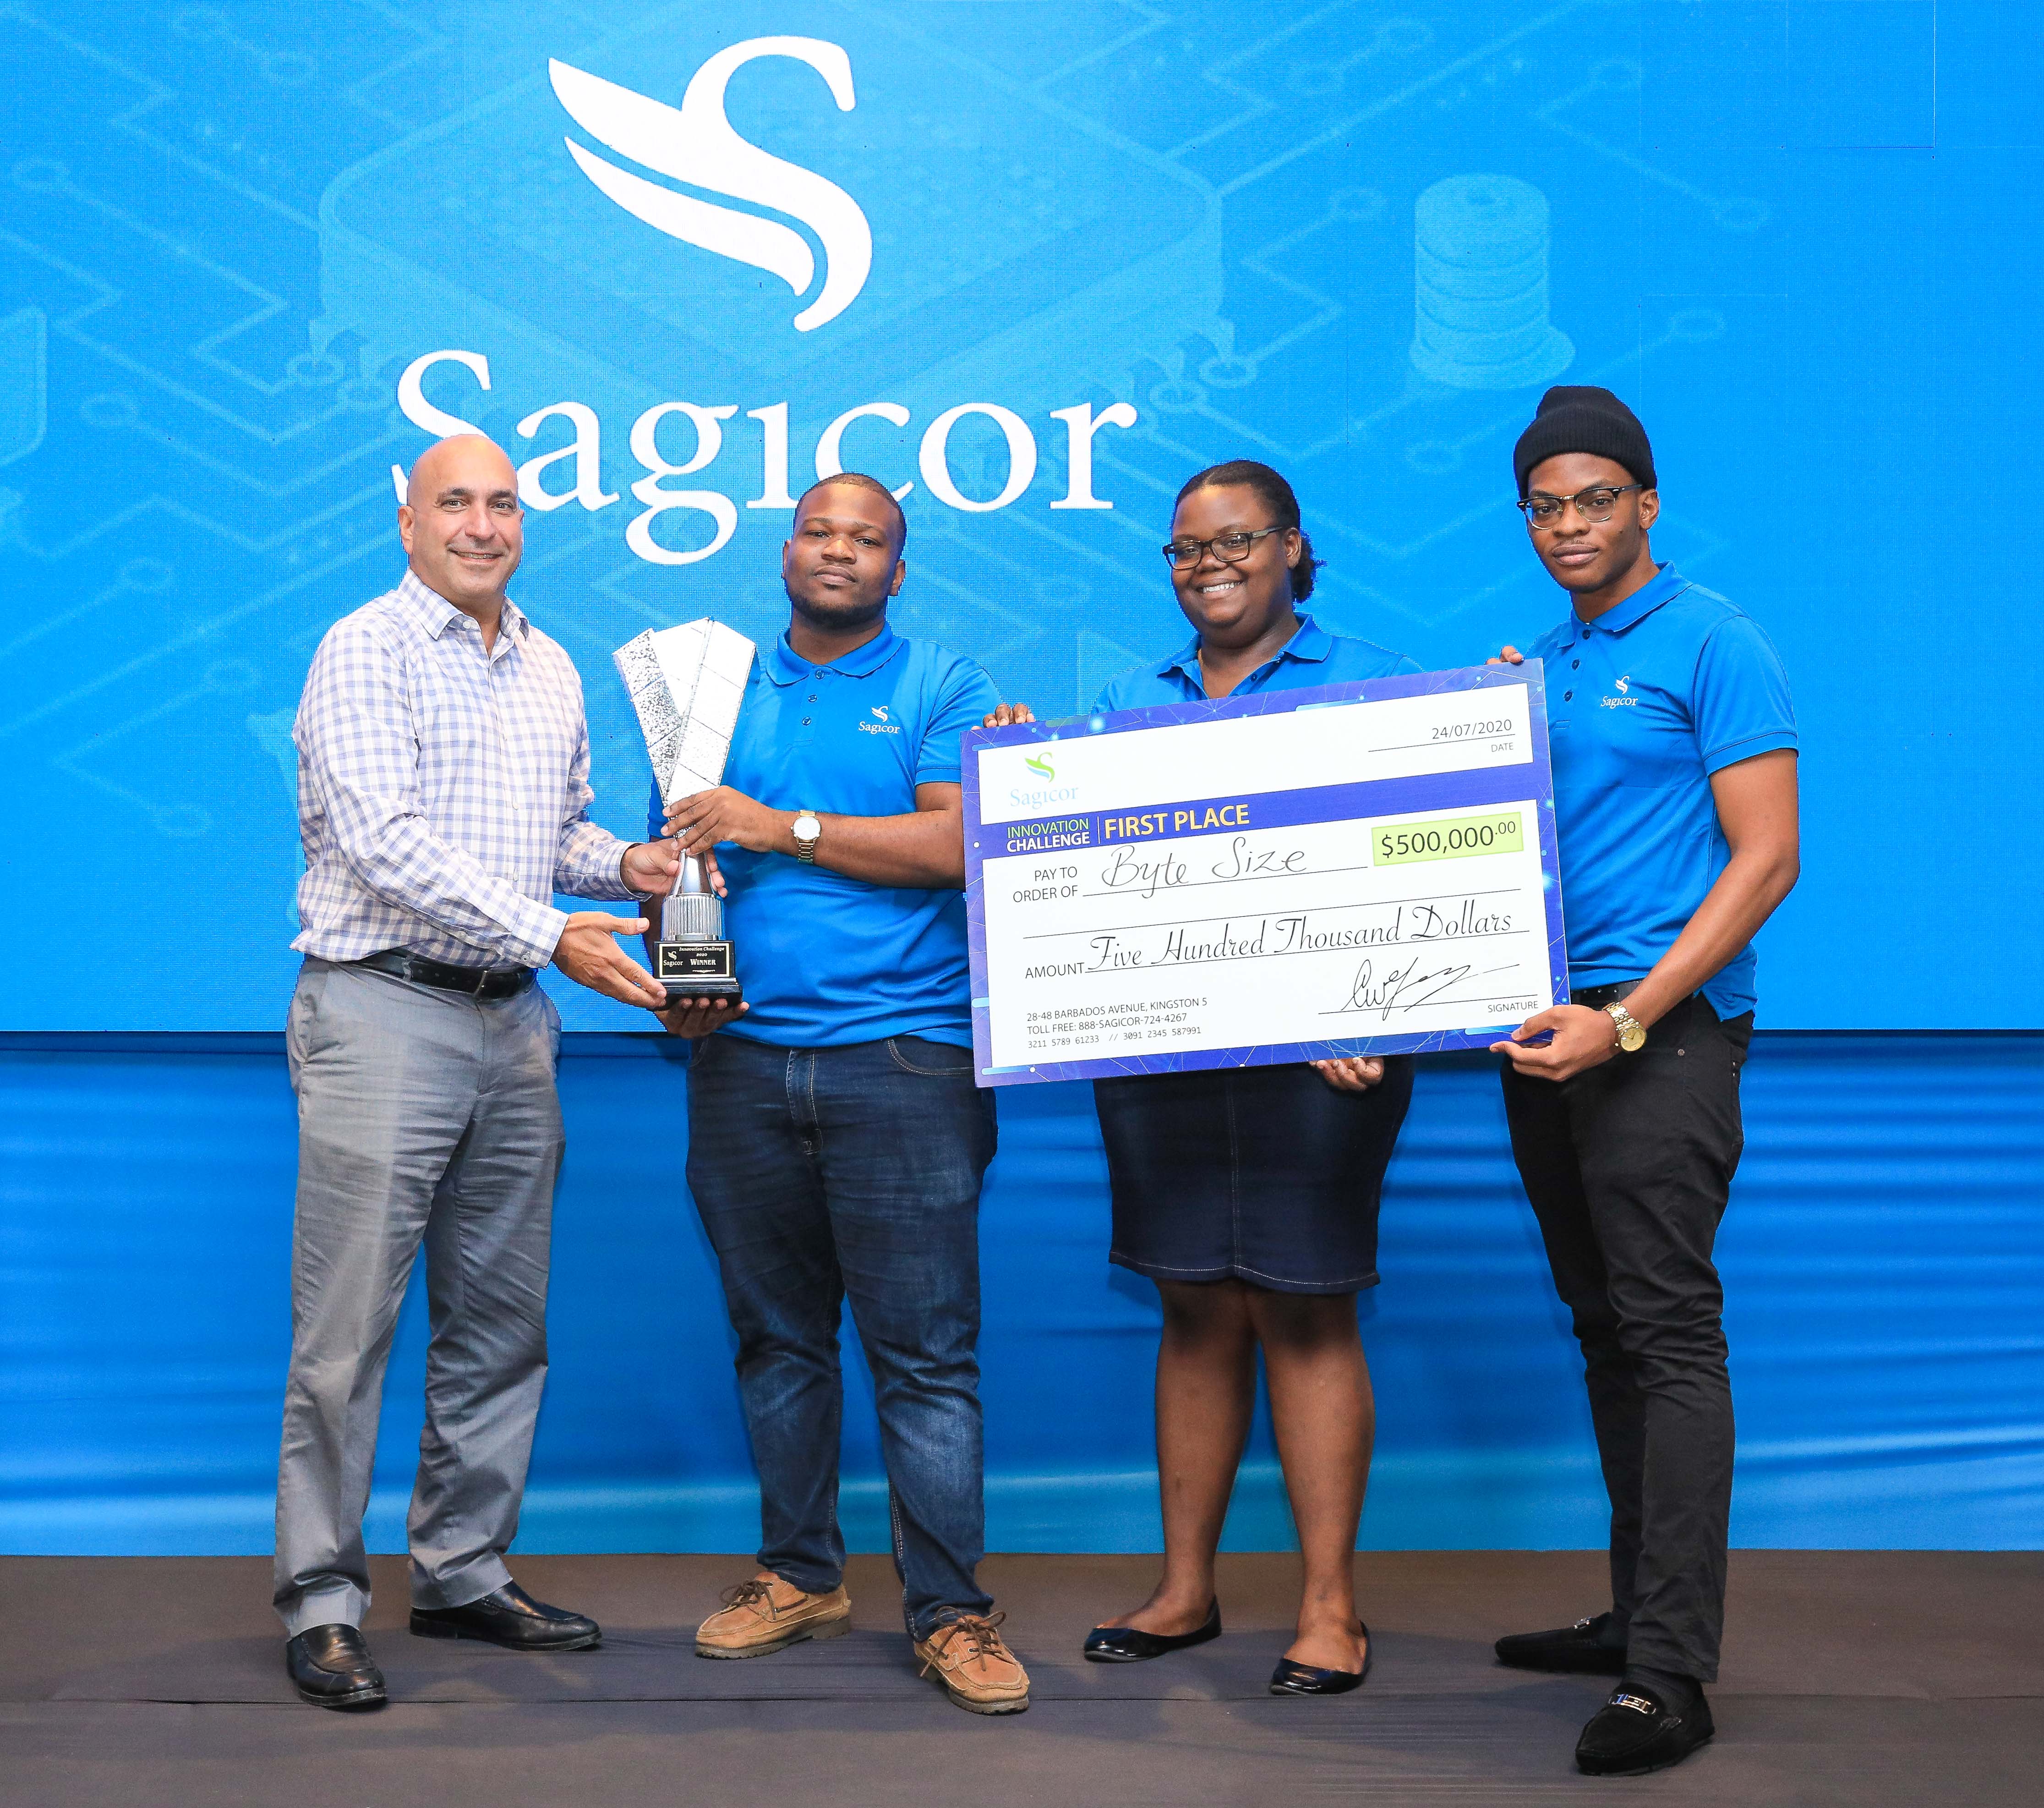 Students Shine at Sagicor Innovation Challenge